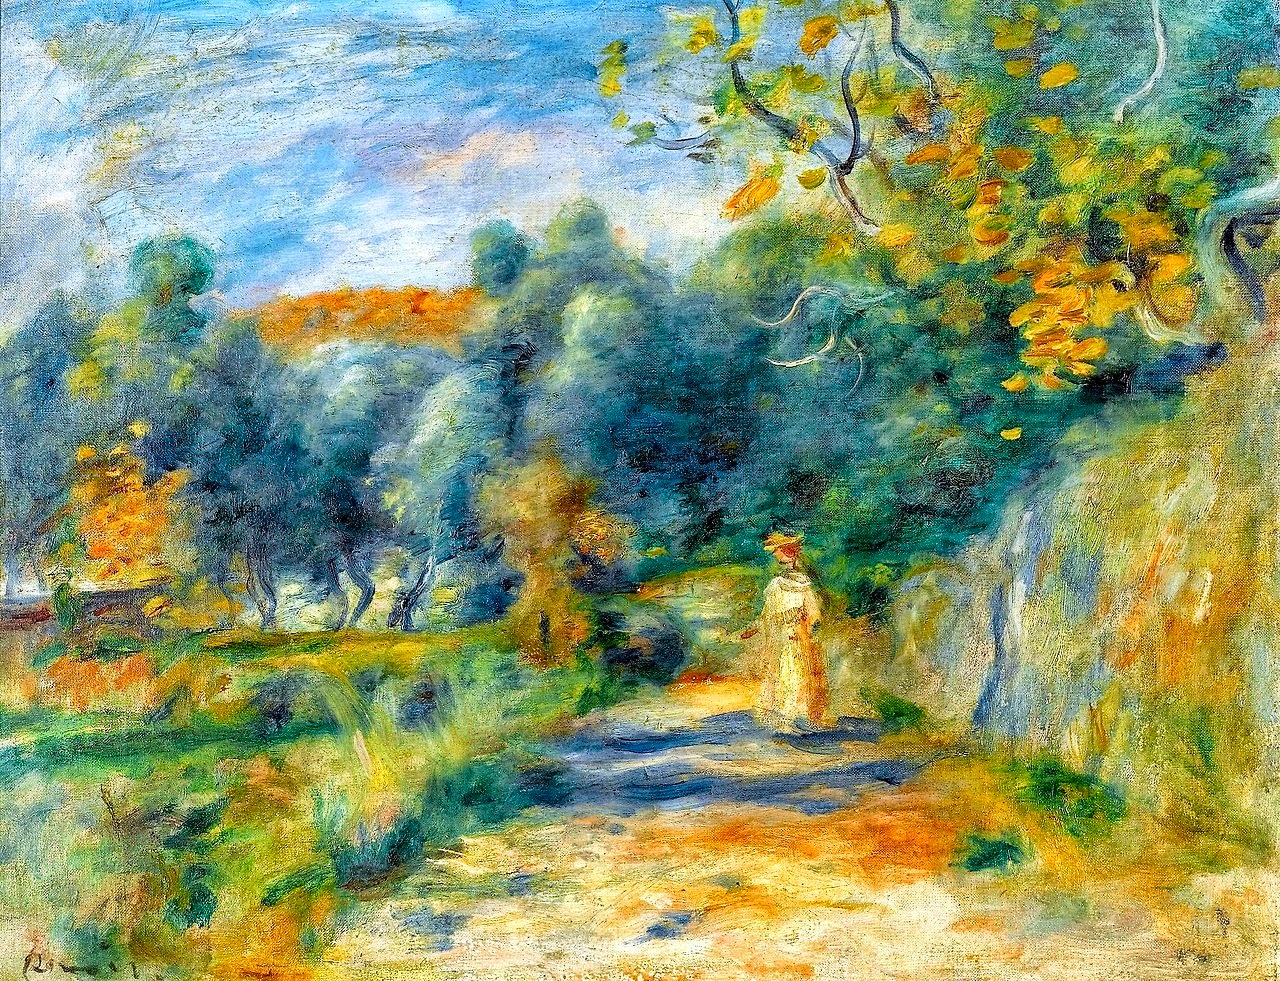 Pierre+Auguste+Renoir-1841-1-19 (404).jpg